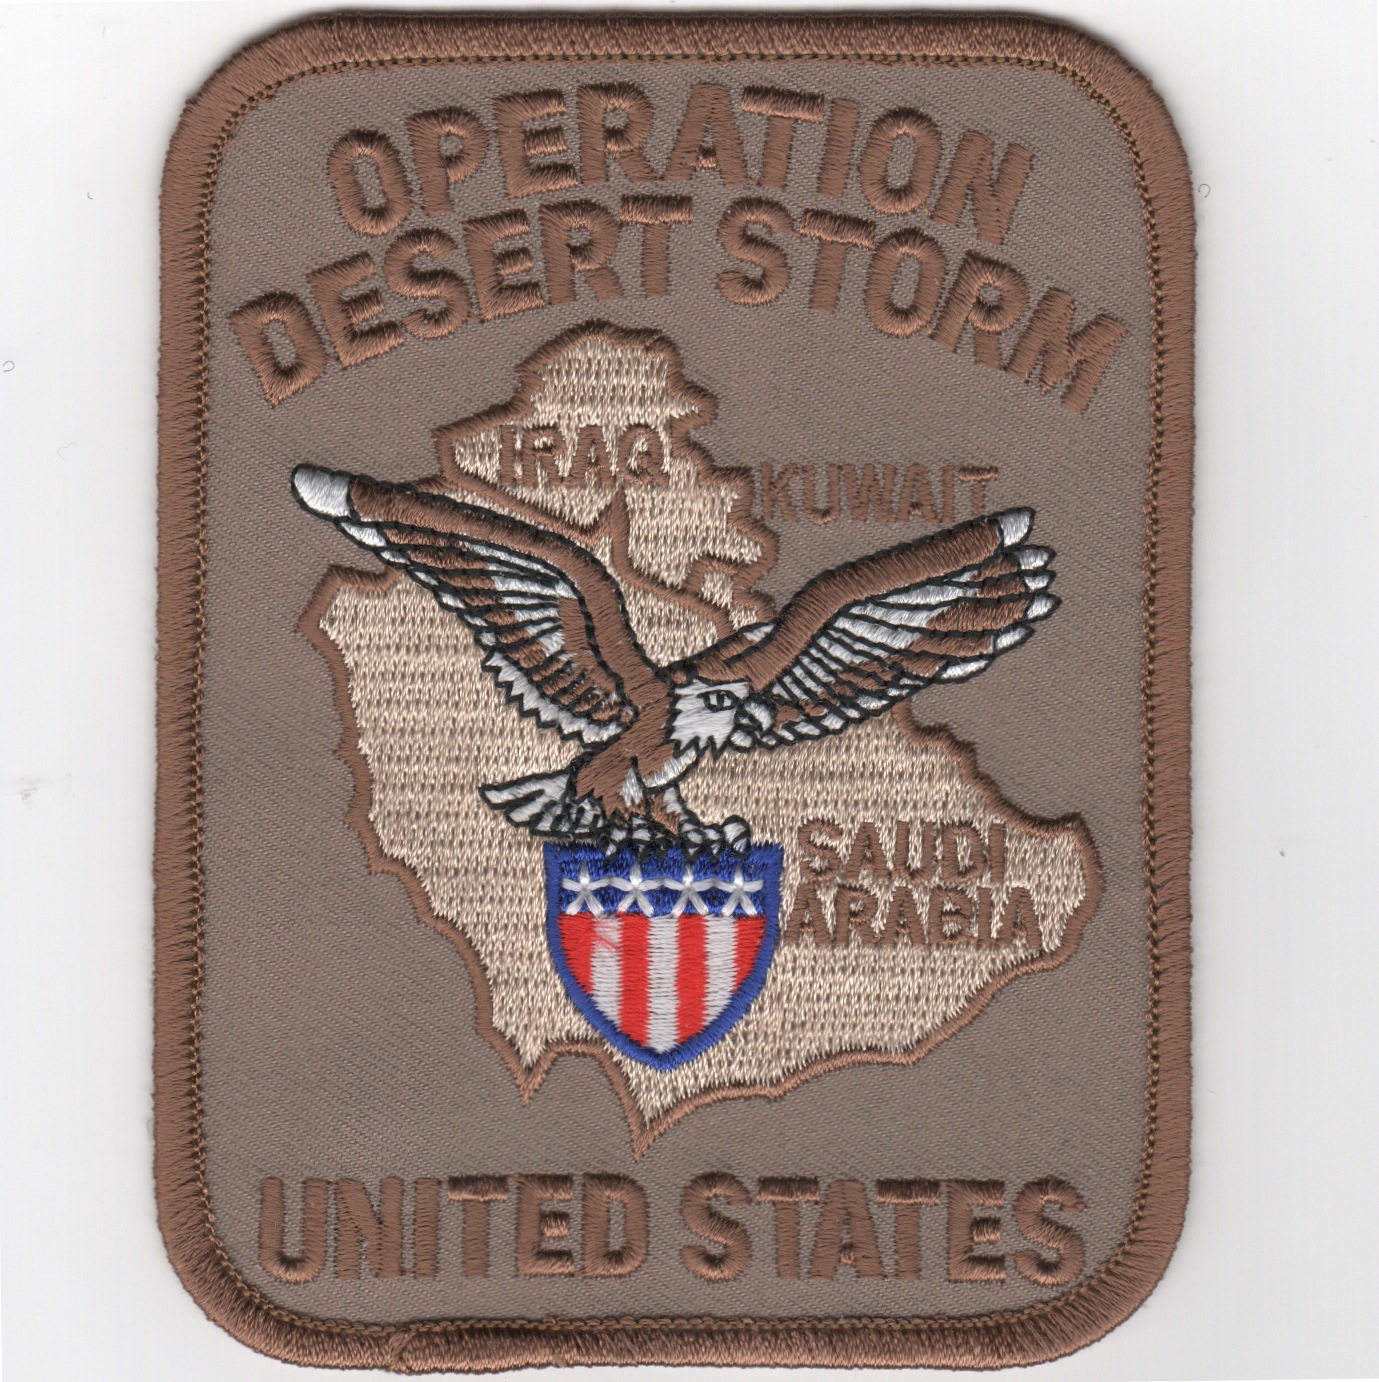 Operation DESERT STORM Patch (Rect/Des)